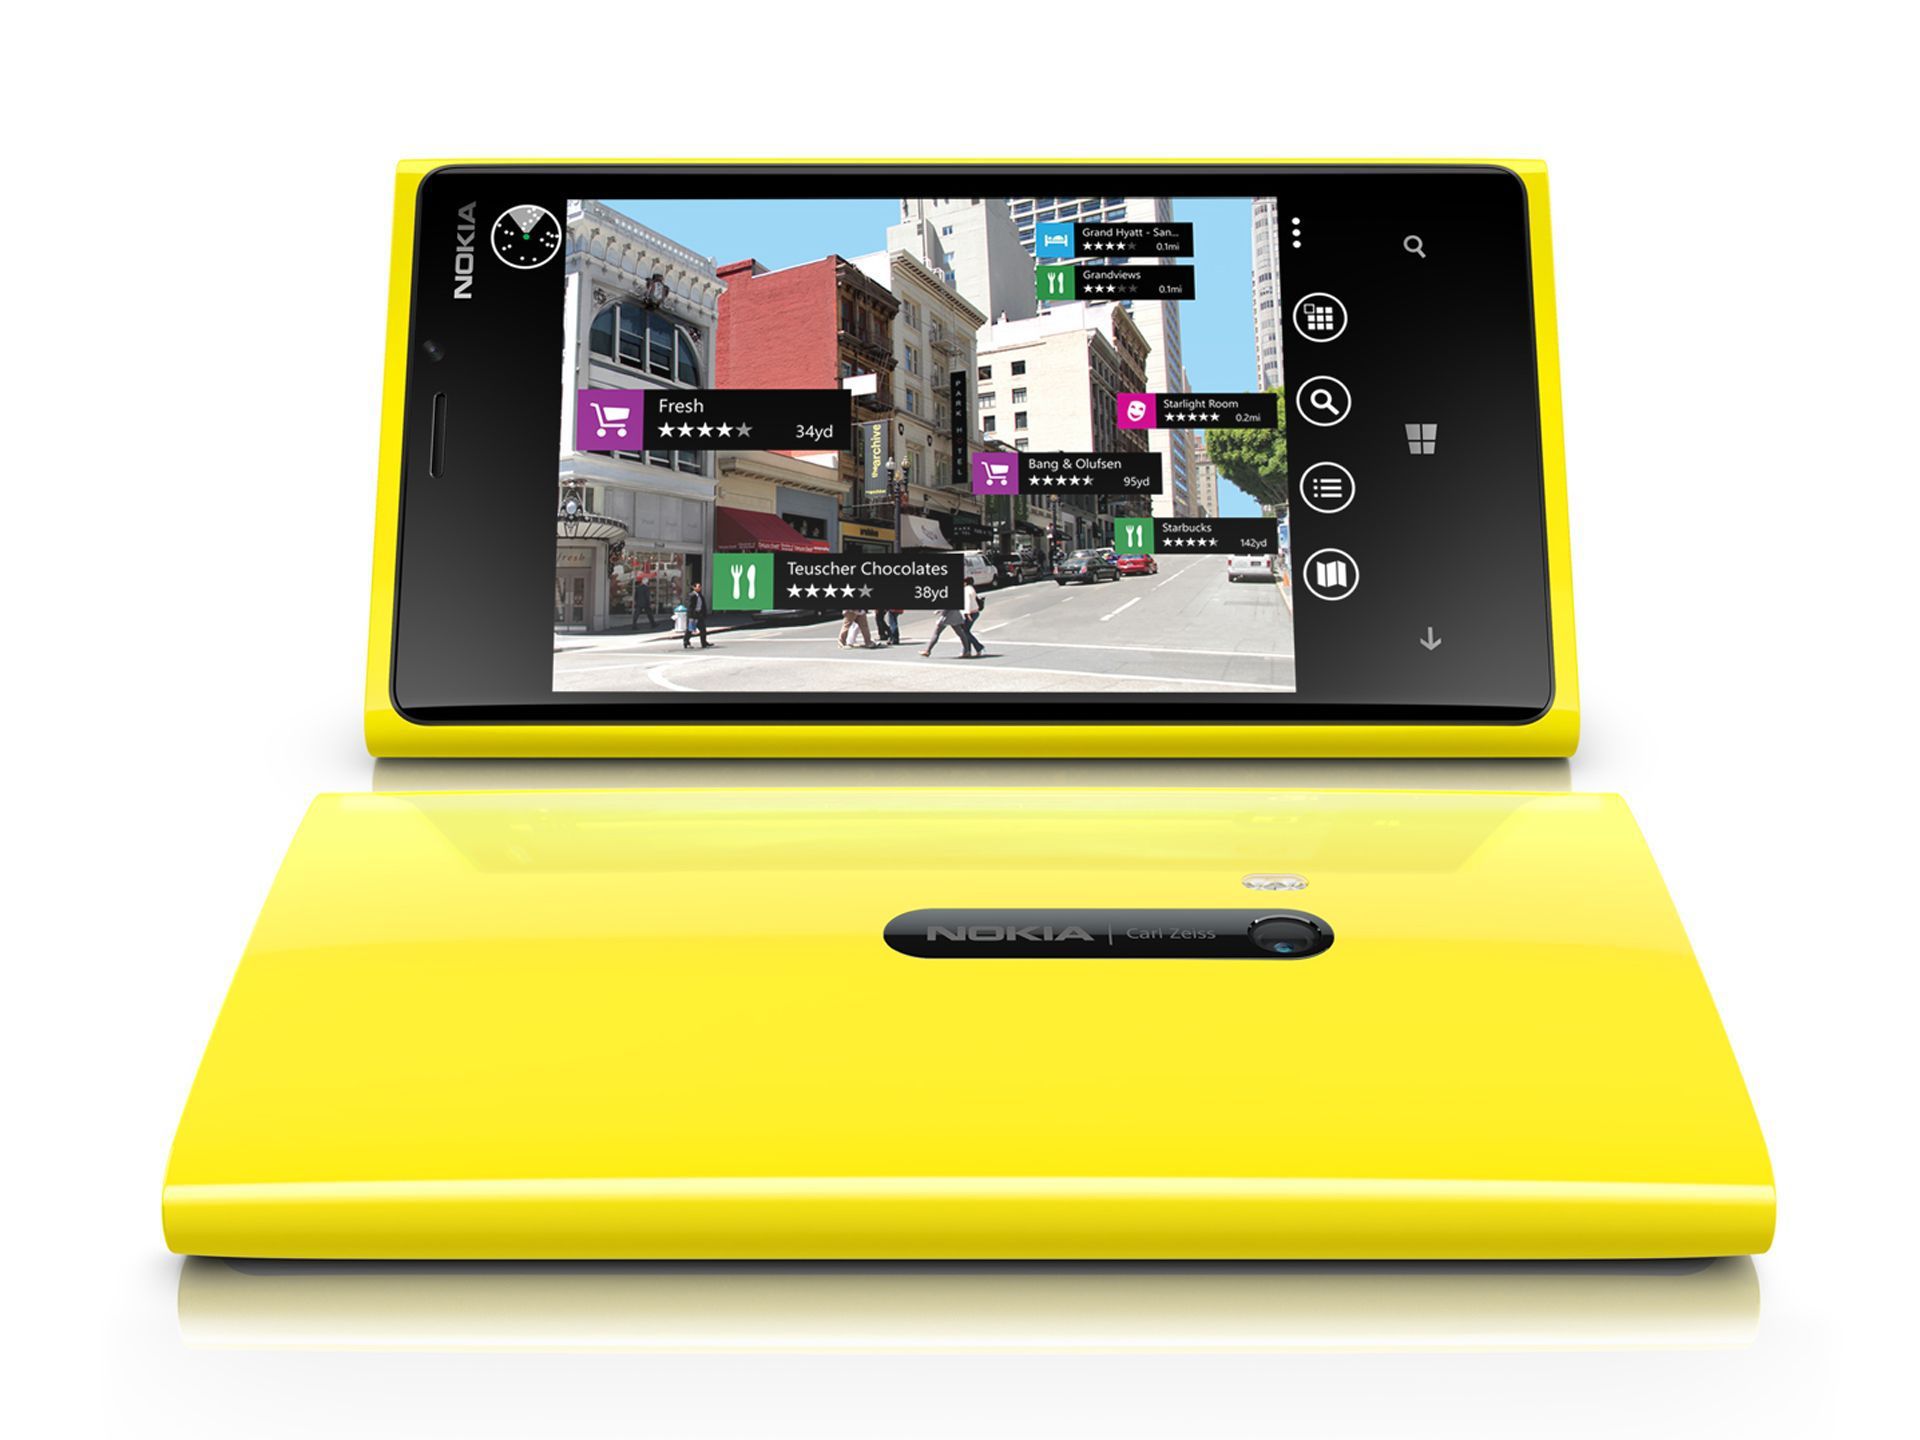 nokia lumia 920 yellow wallpaper